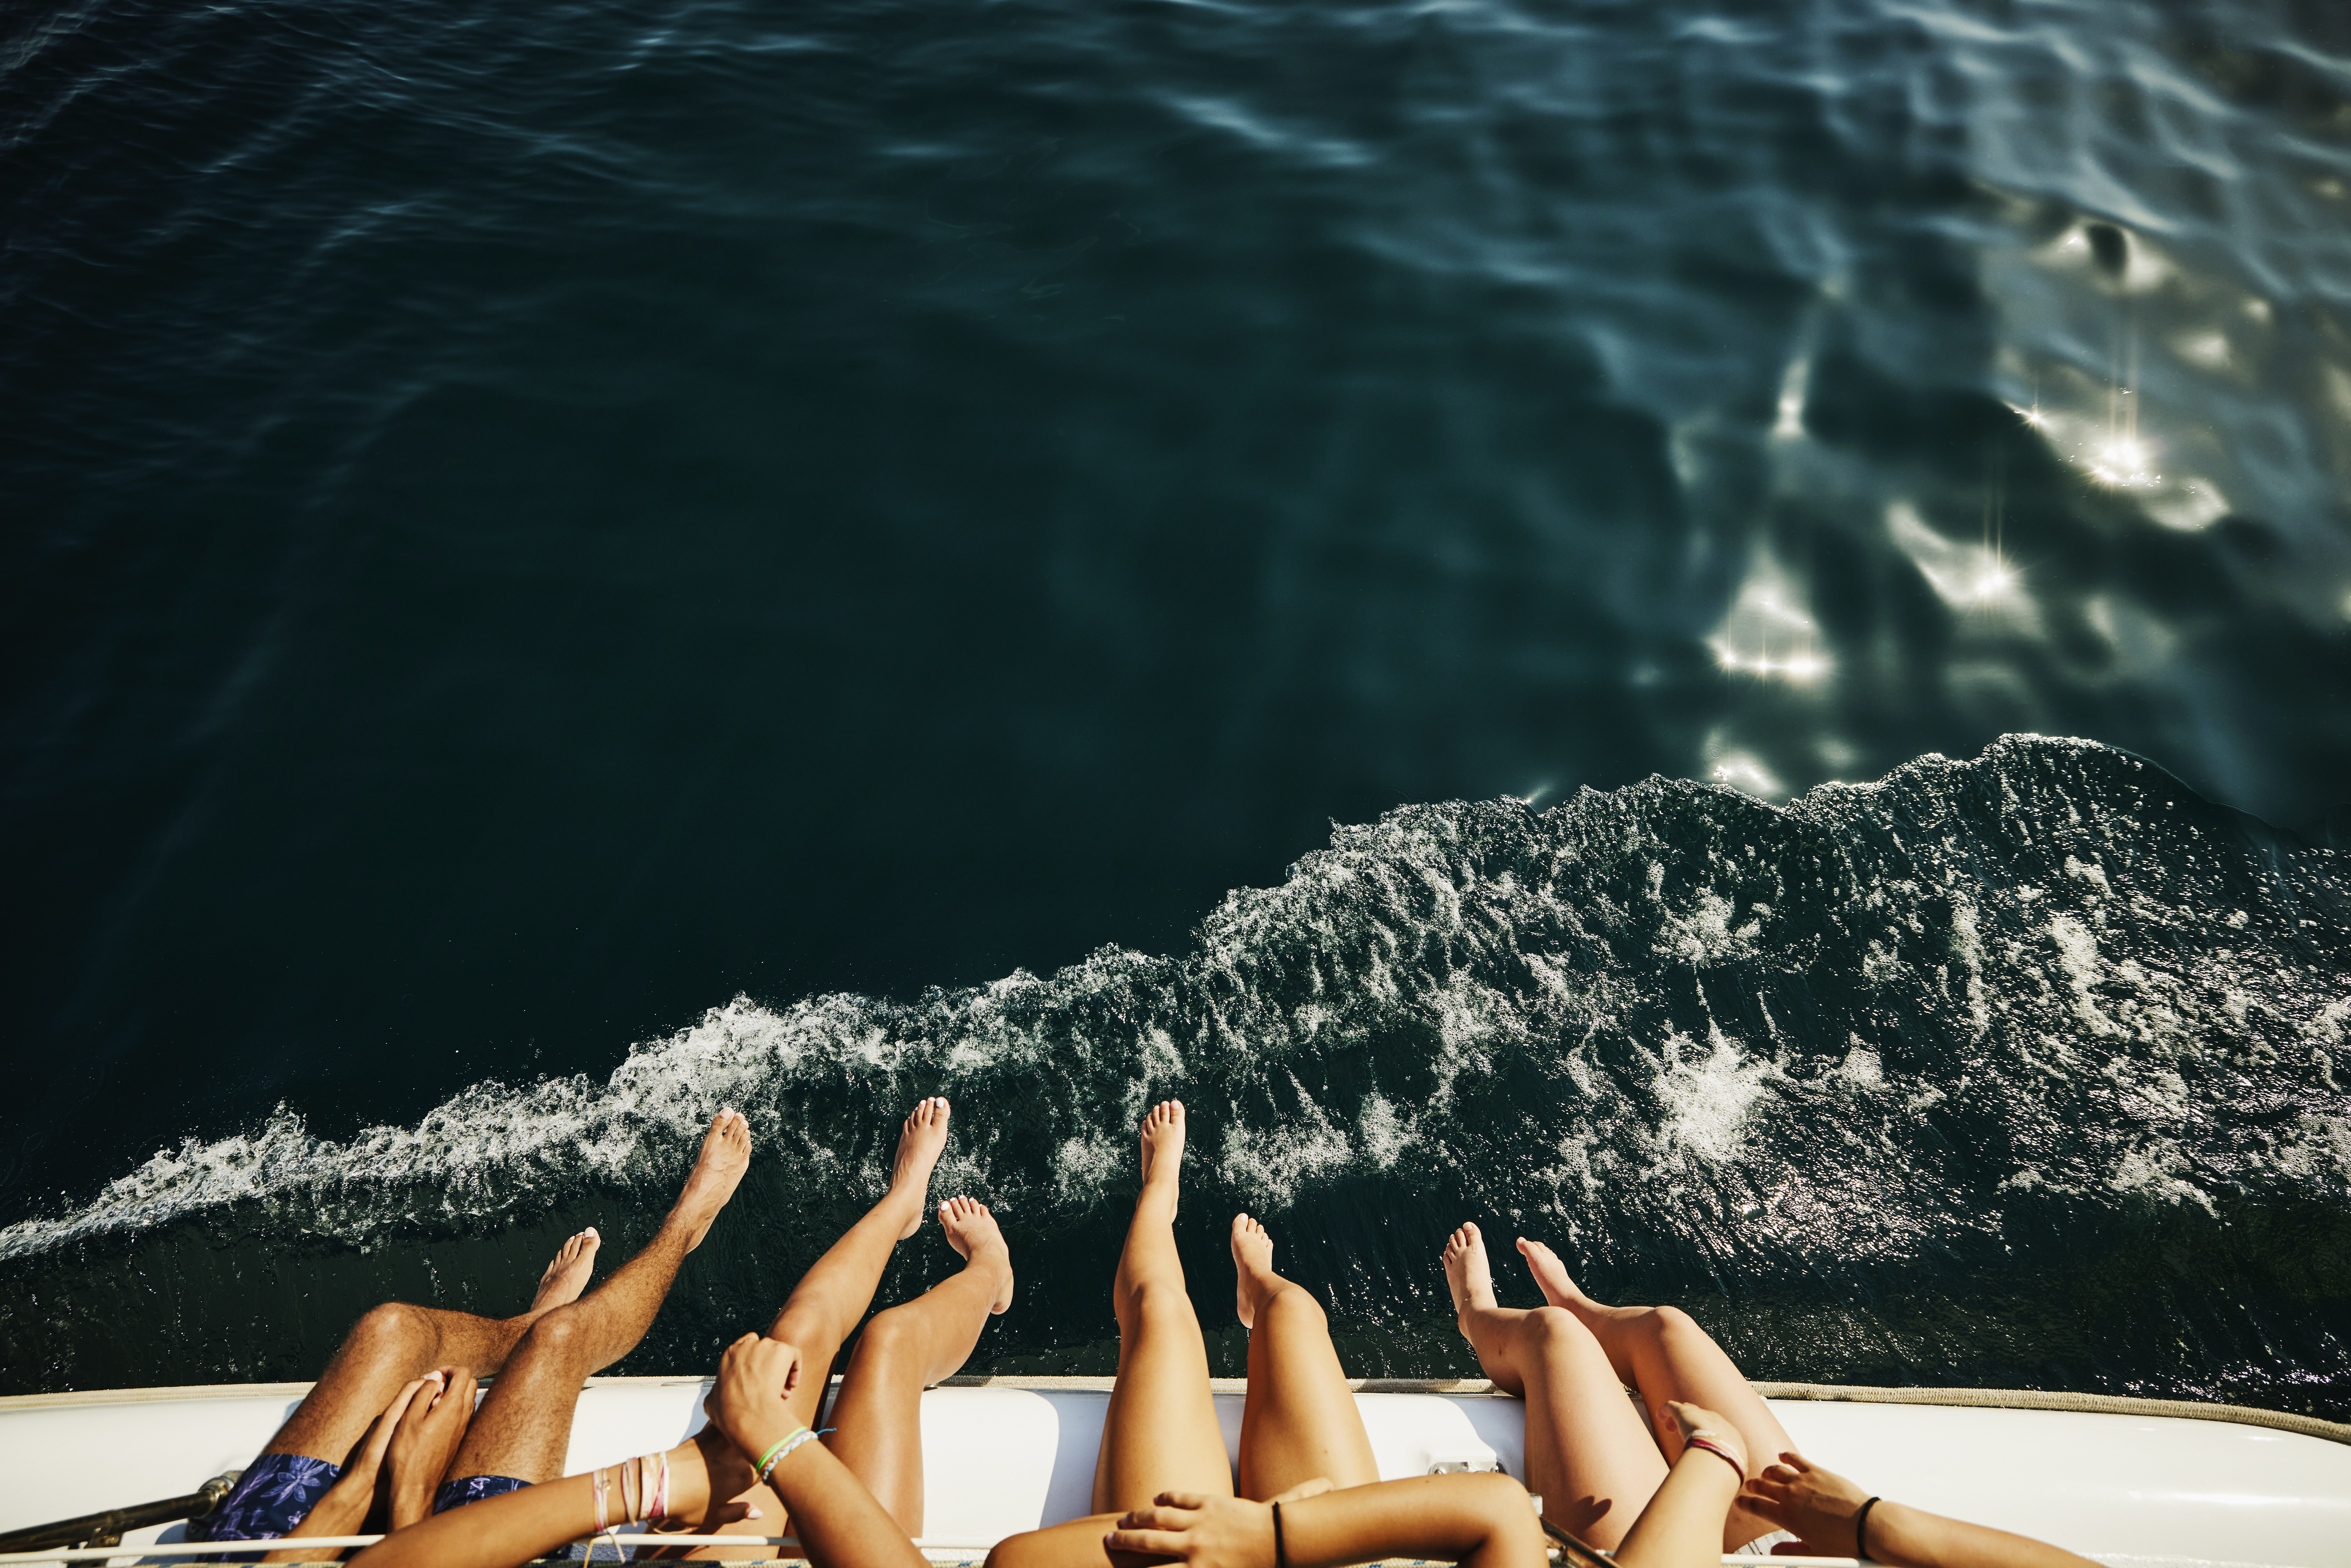 Une photo de personnes se balançant les jambes par-dessus le bord d'un bateau | Source : Getty Images